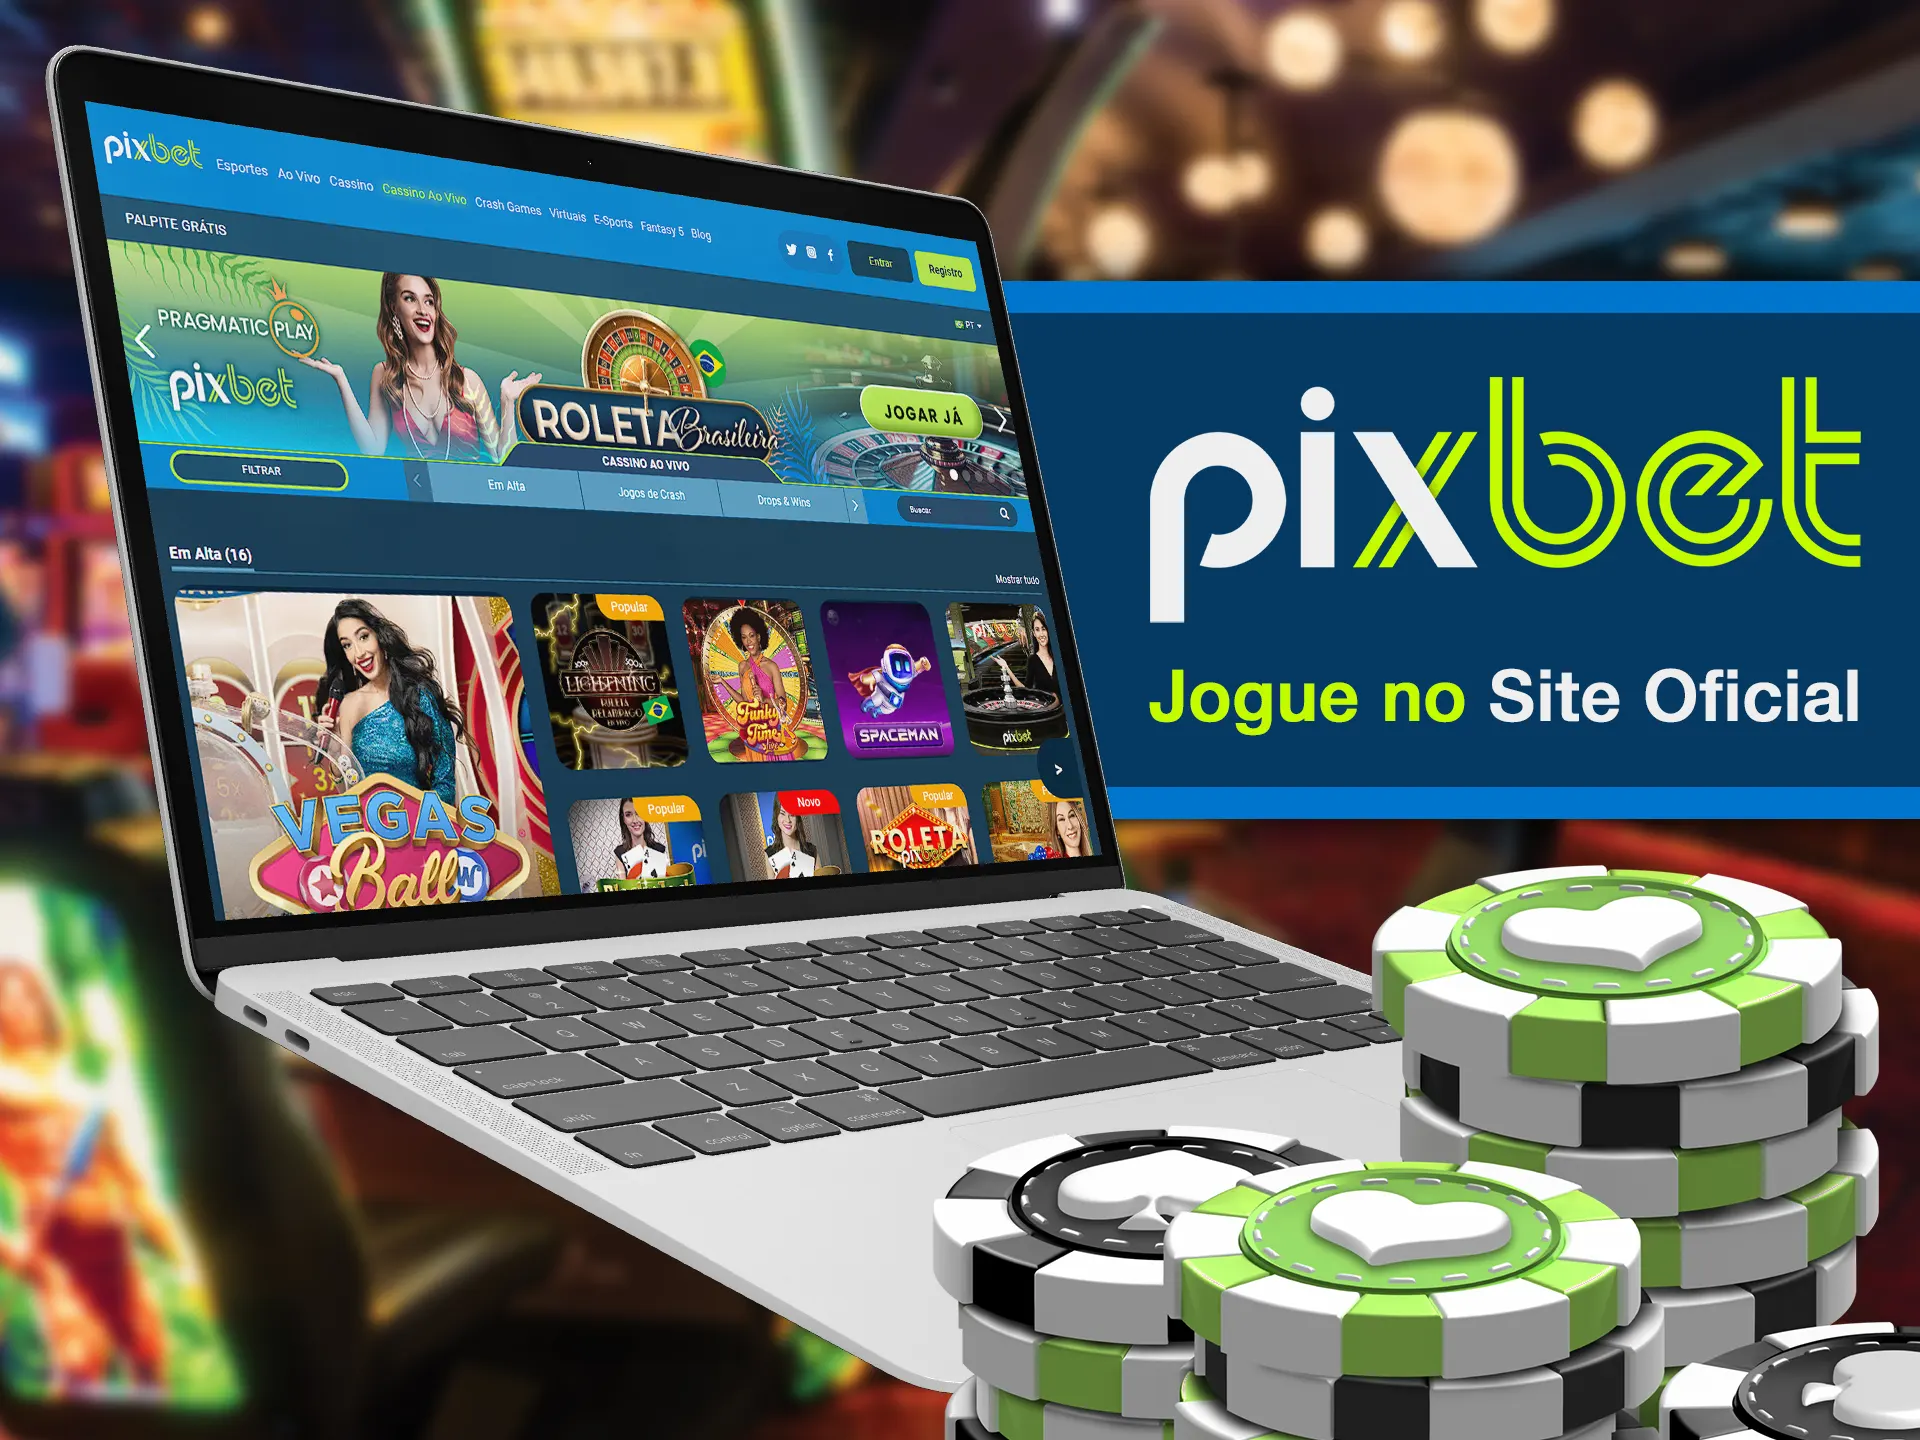 Visite o site oficial da Pixbet e comece a jogar jogos de cassino.